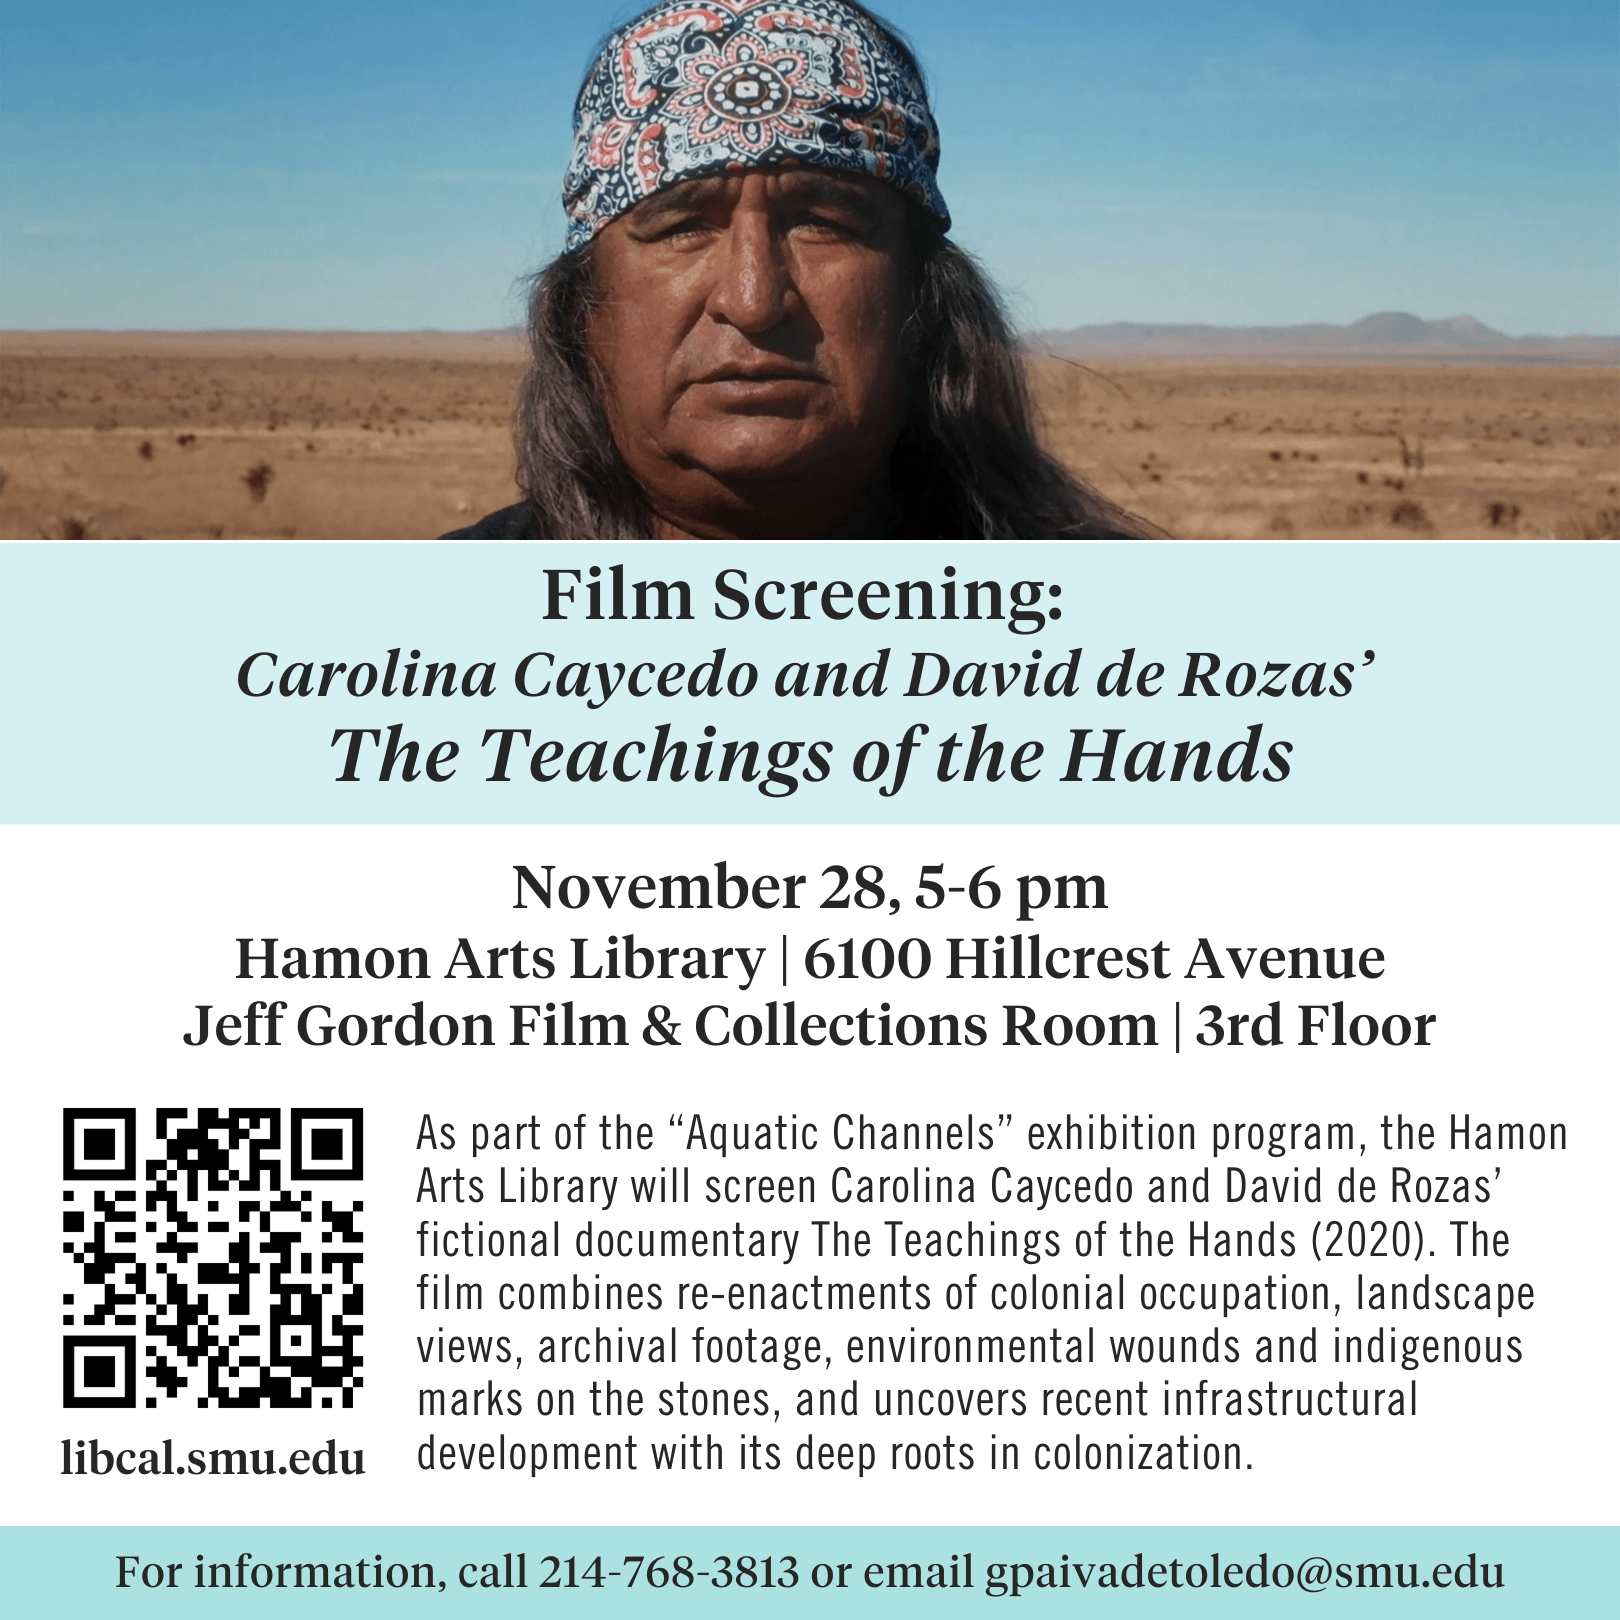 The Teachings of the Hands film screening on Nov. 28